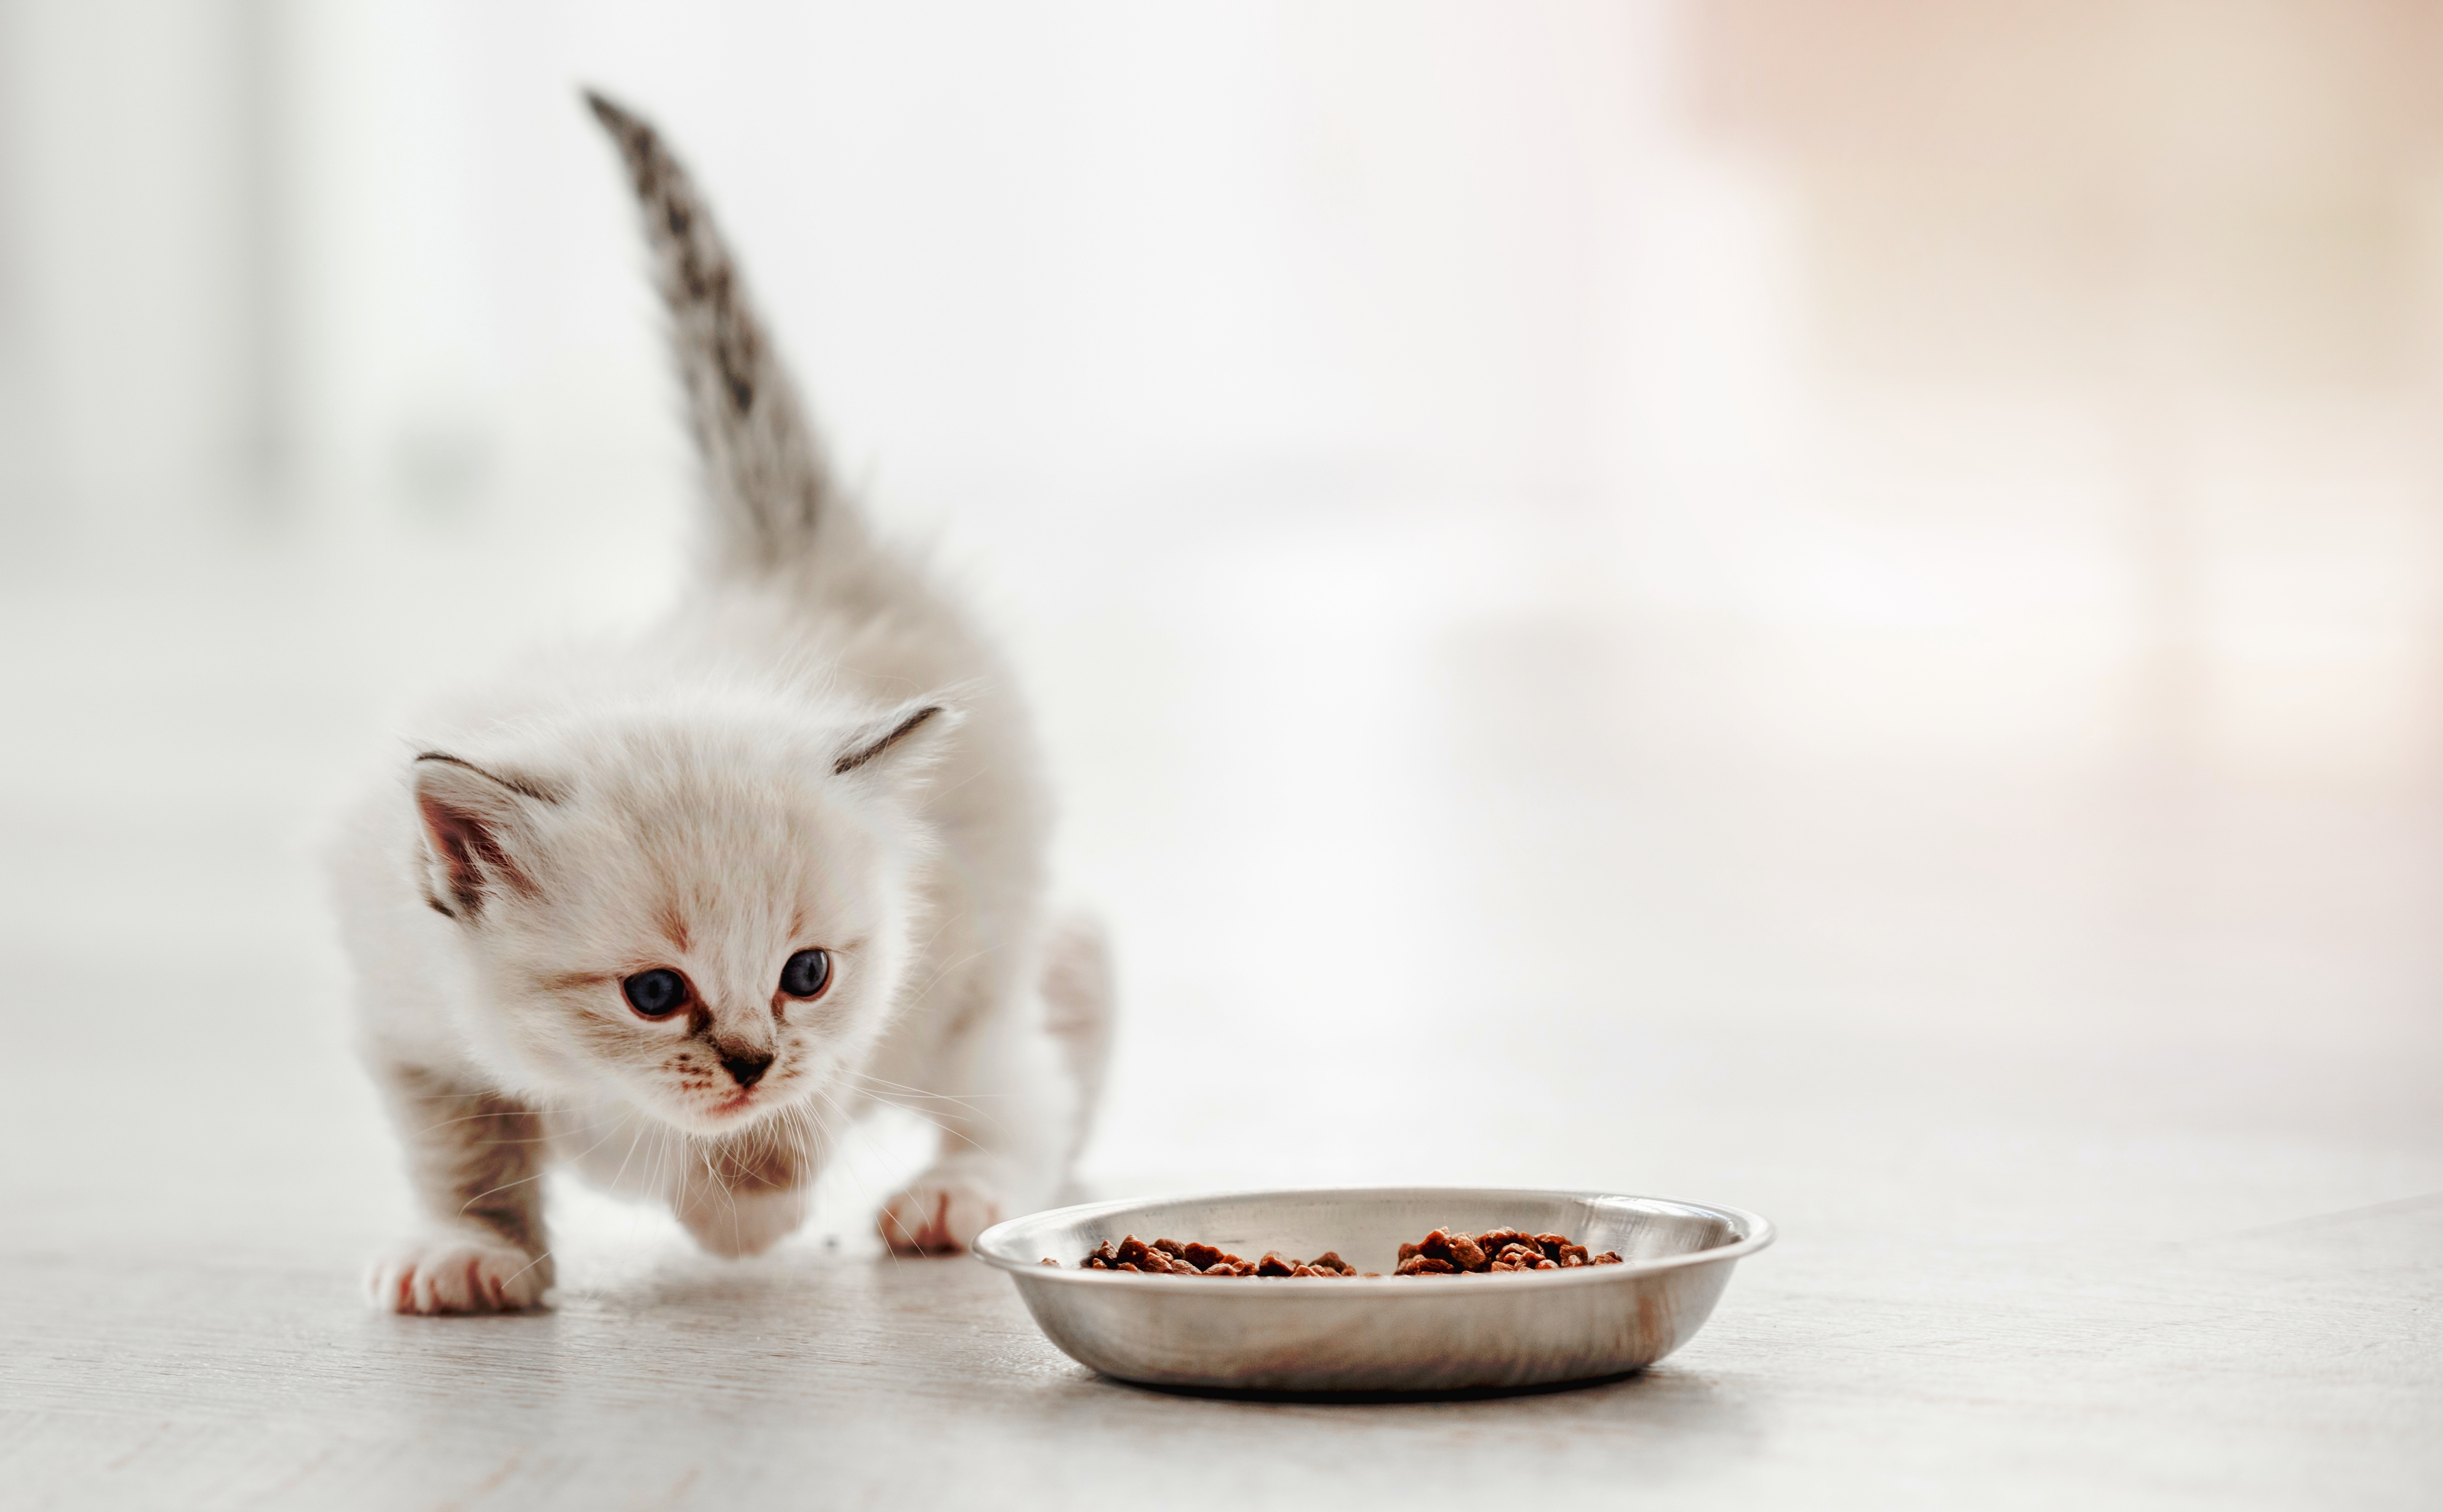 A kitten walking toward a bowl of food | Source: Shutterstock